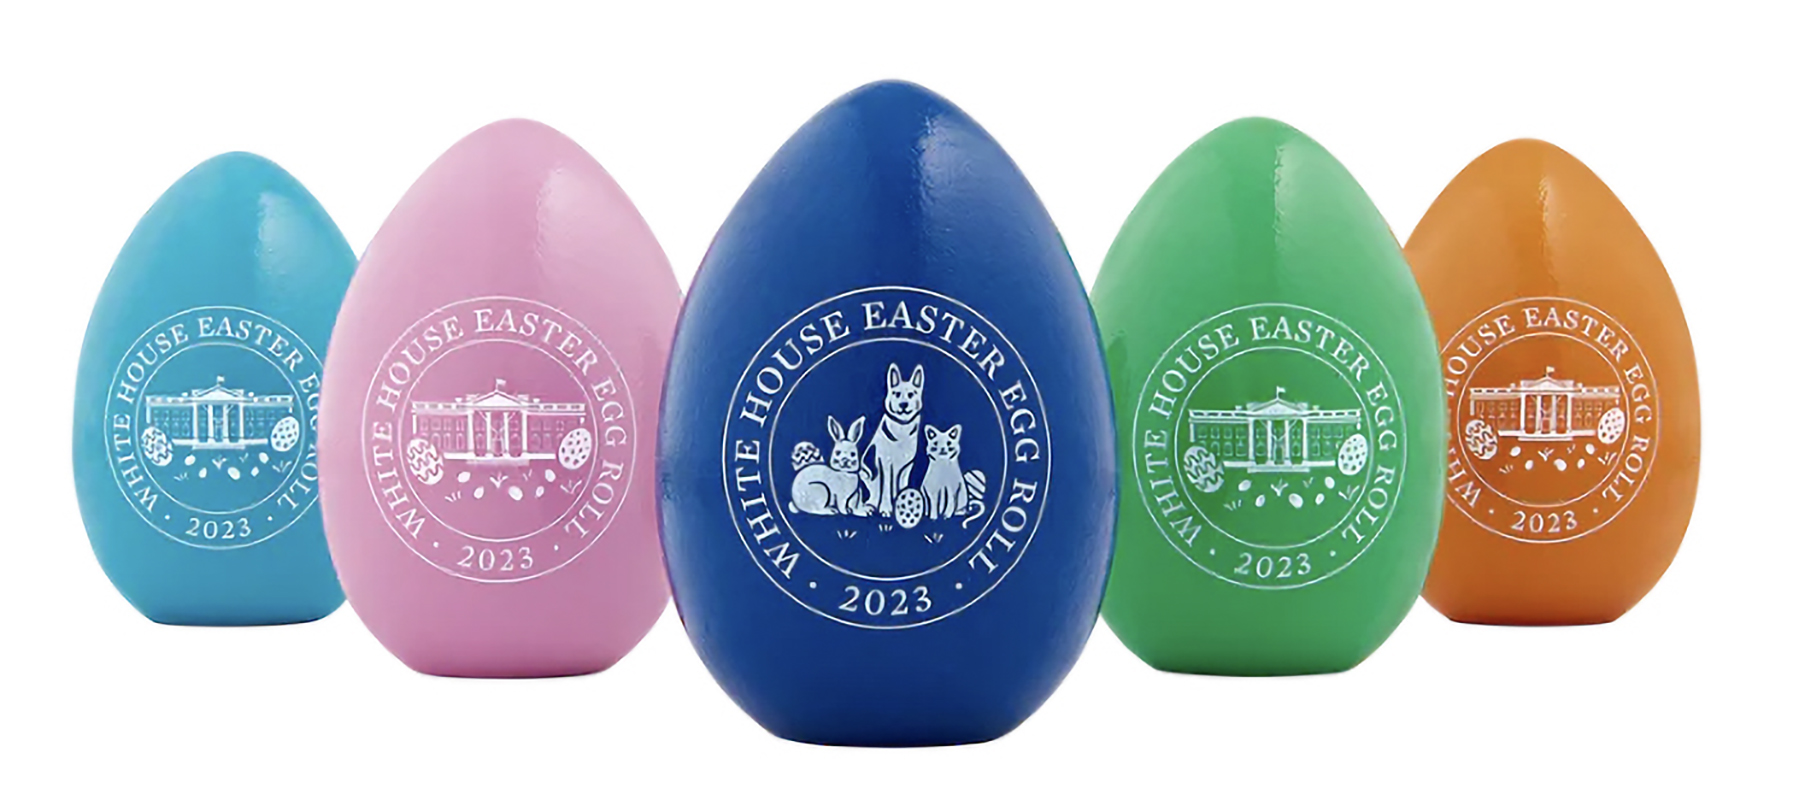 White House Easter eggs